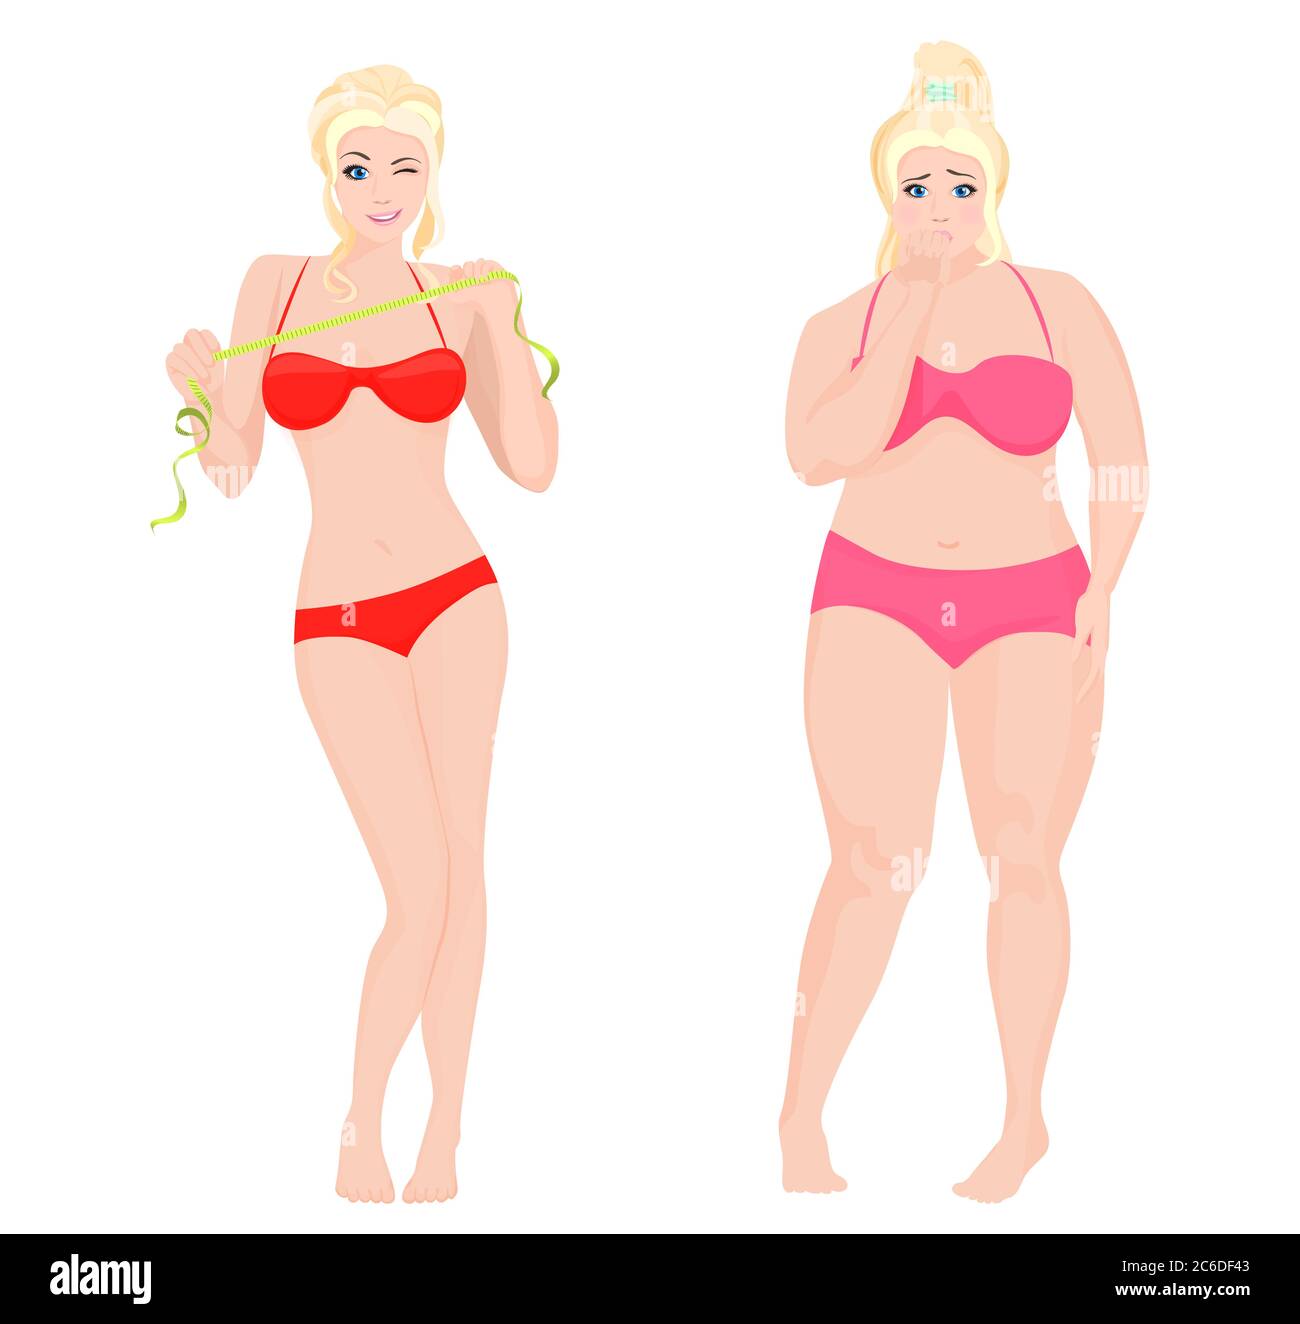 Sottile Salute e donna grassa. Illustrazione vettoriale dell'infografica Lifestyle Illustrazione Vettoriale